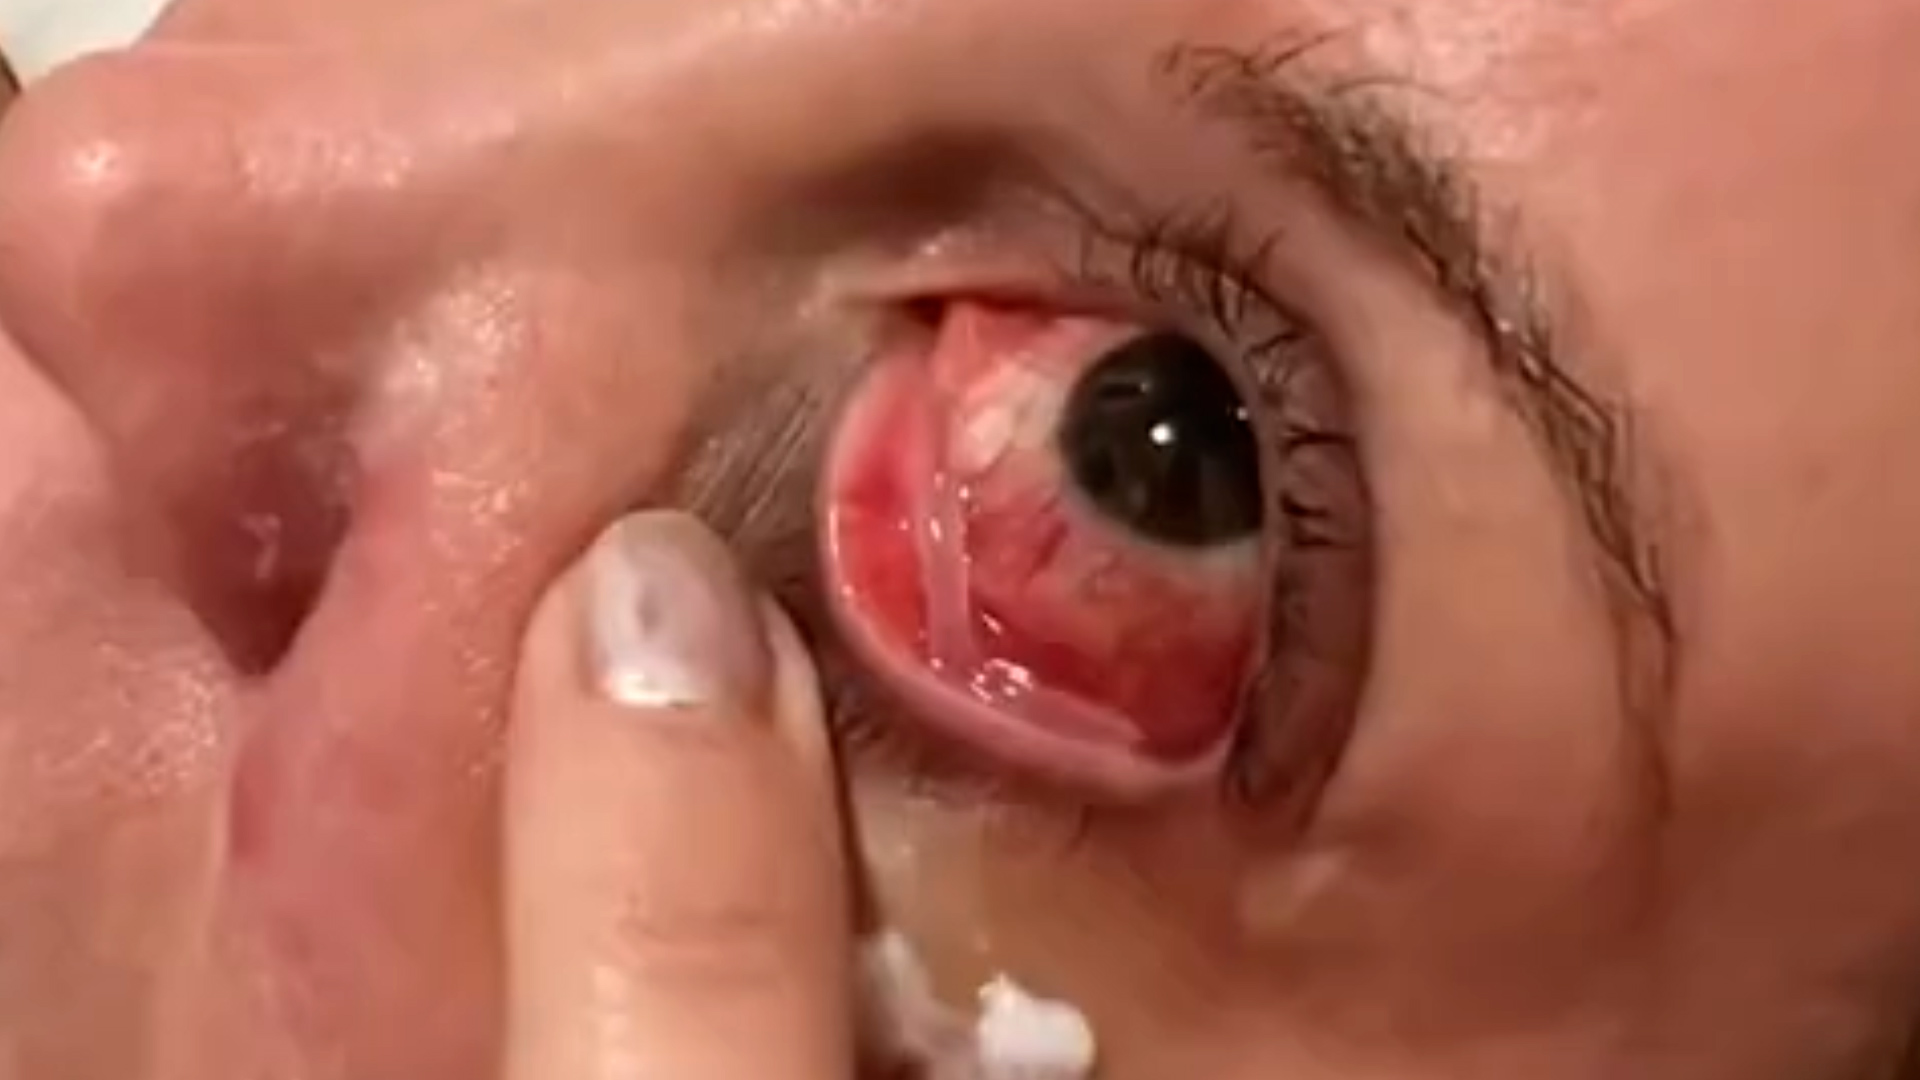 Un detalle sobre la lesión en el ojo que sufrió Miriam Lanzoni tras un ataque de su gato. "Me pasó a un milímetro de la córnea", contó